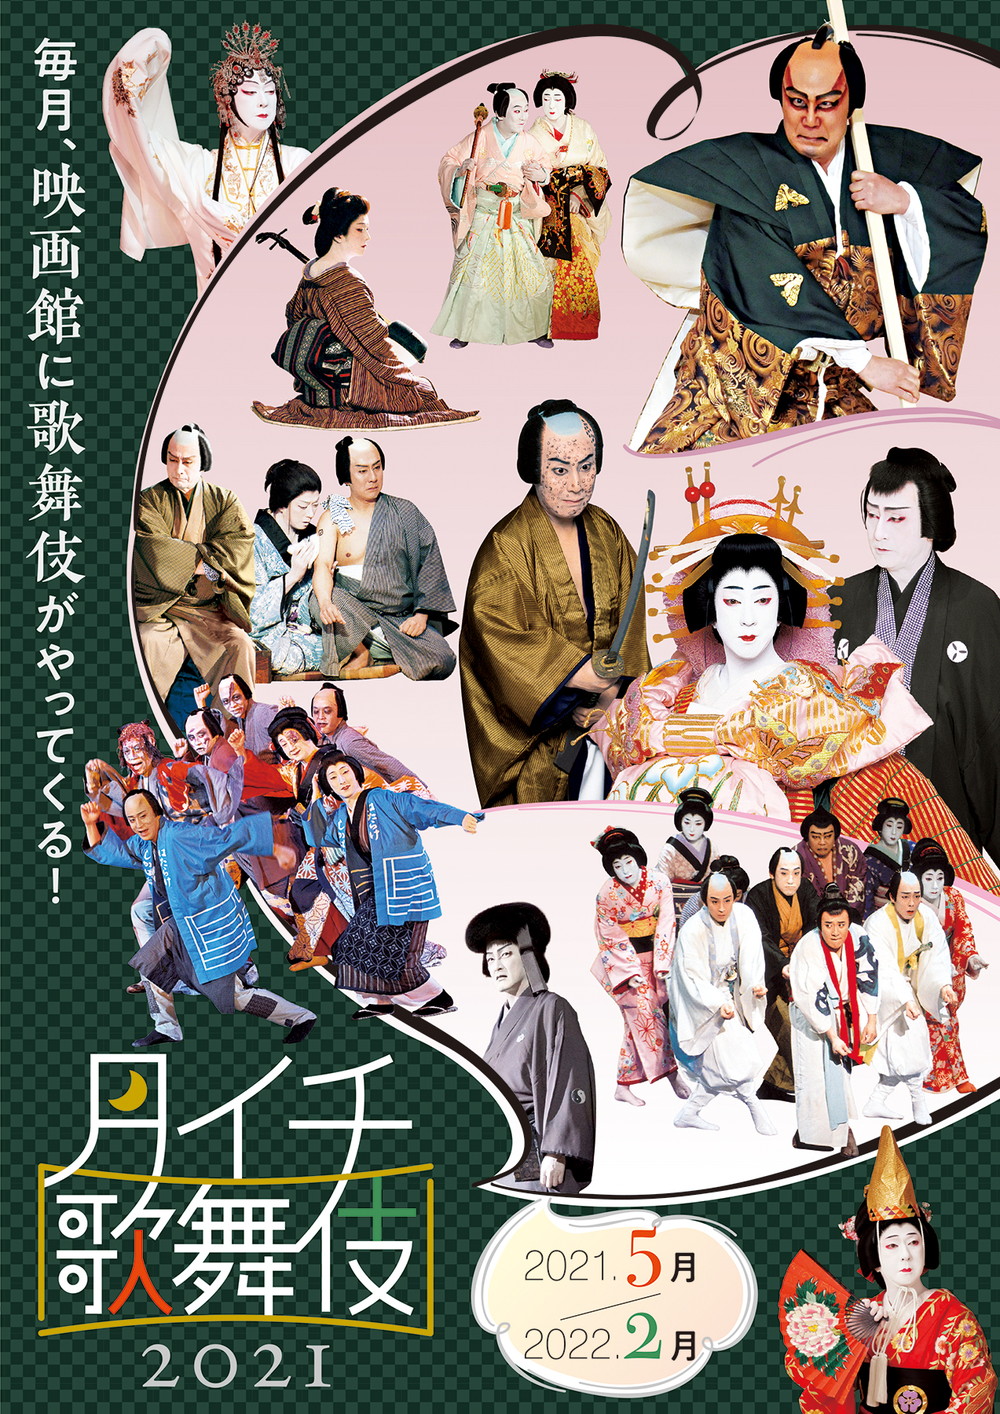 シネマ歌舞伎《月イチ歌舞伎》2021上映